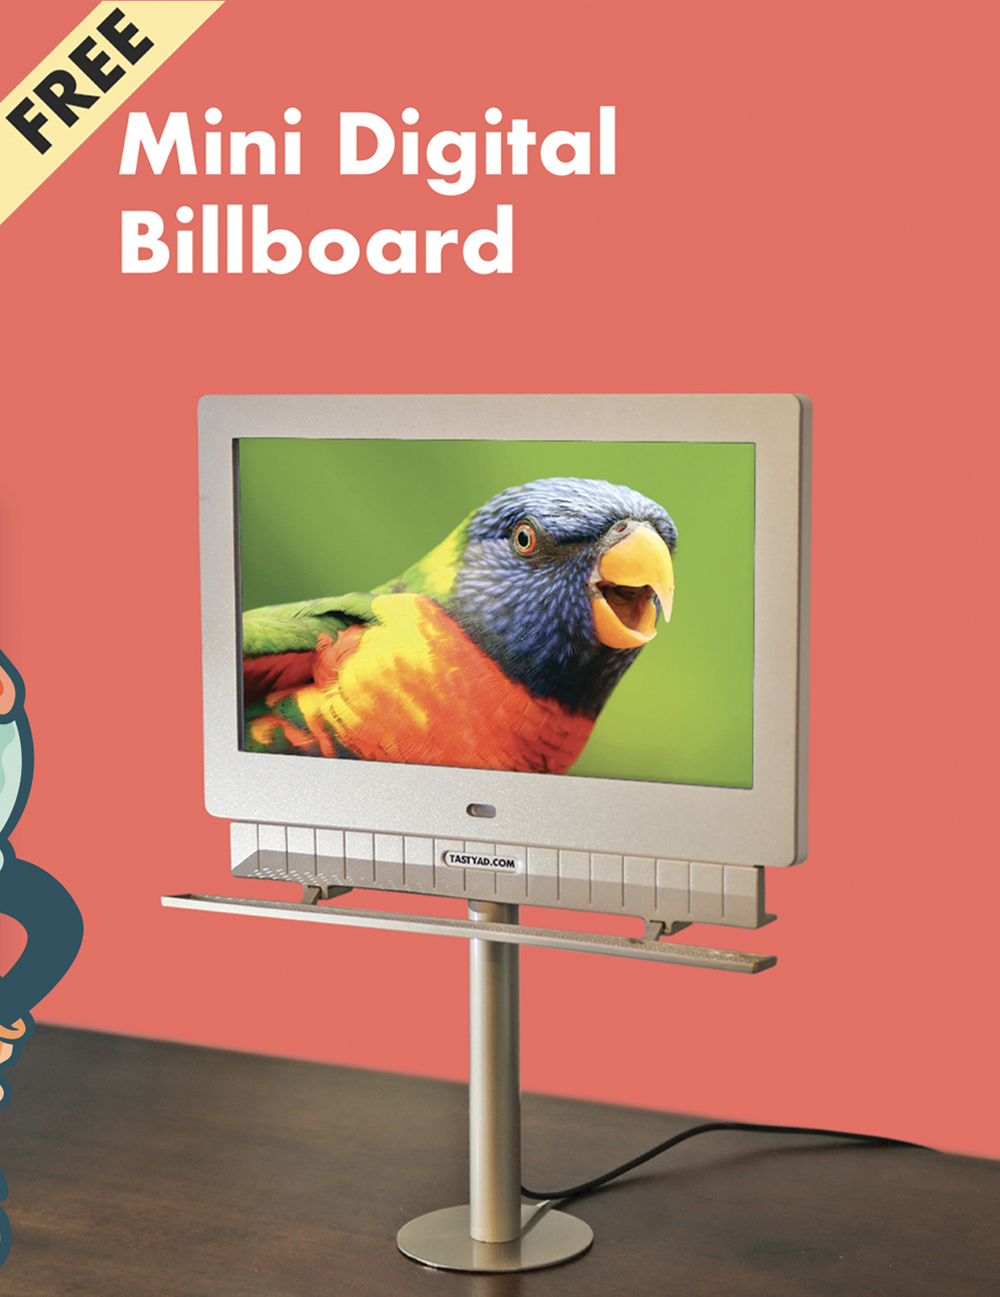 Free Mini Digital Billboard